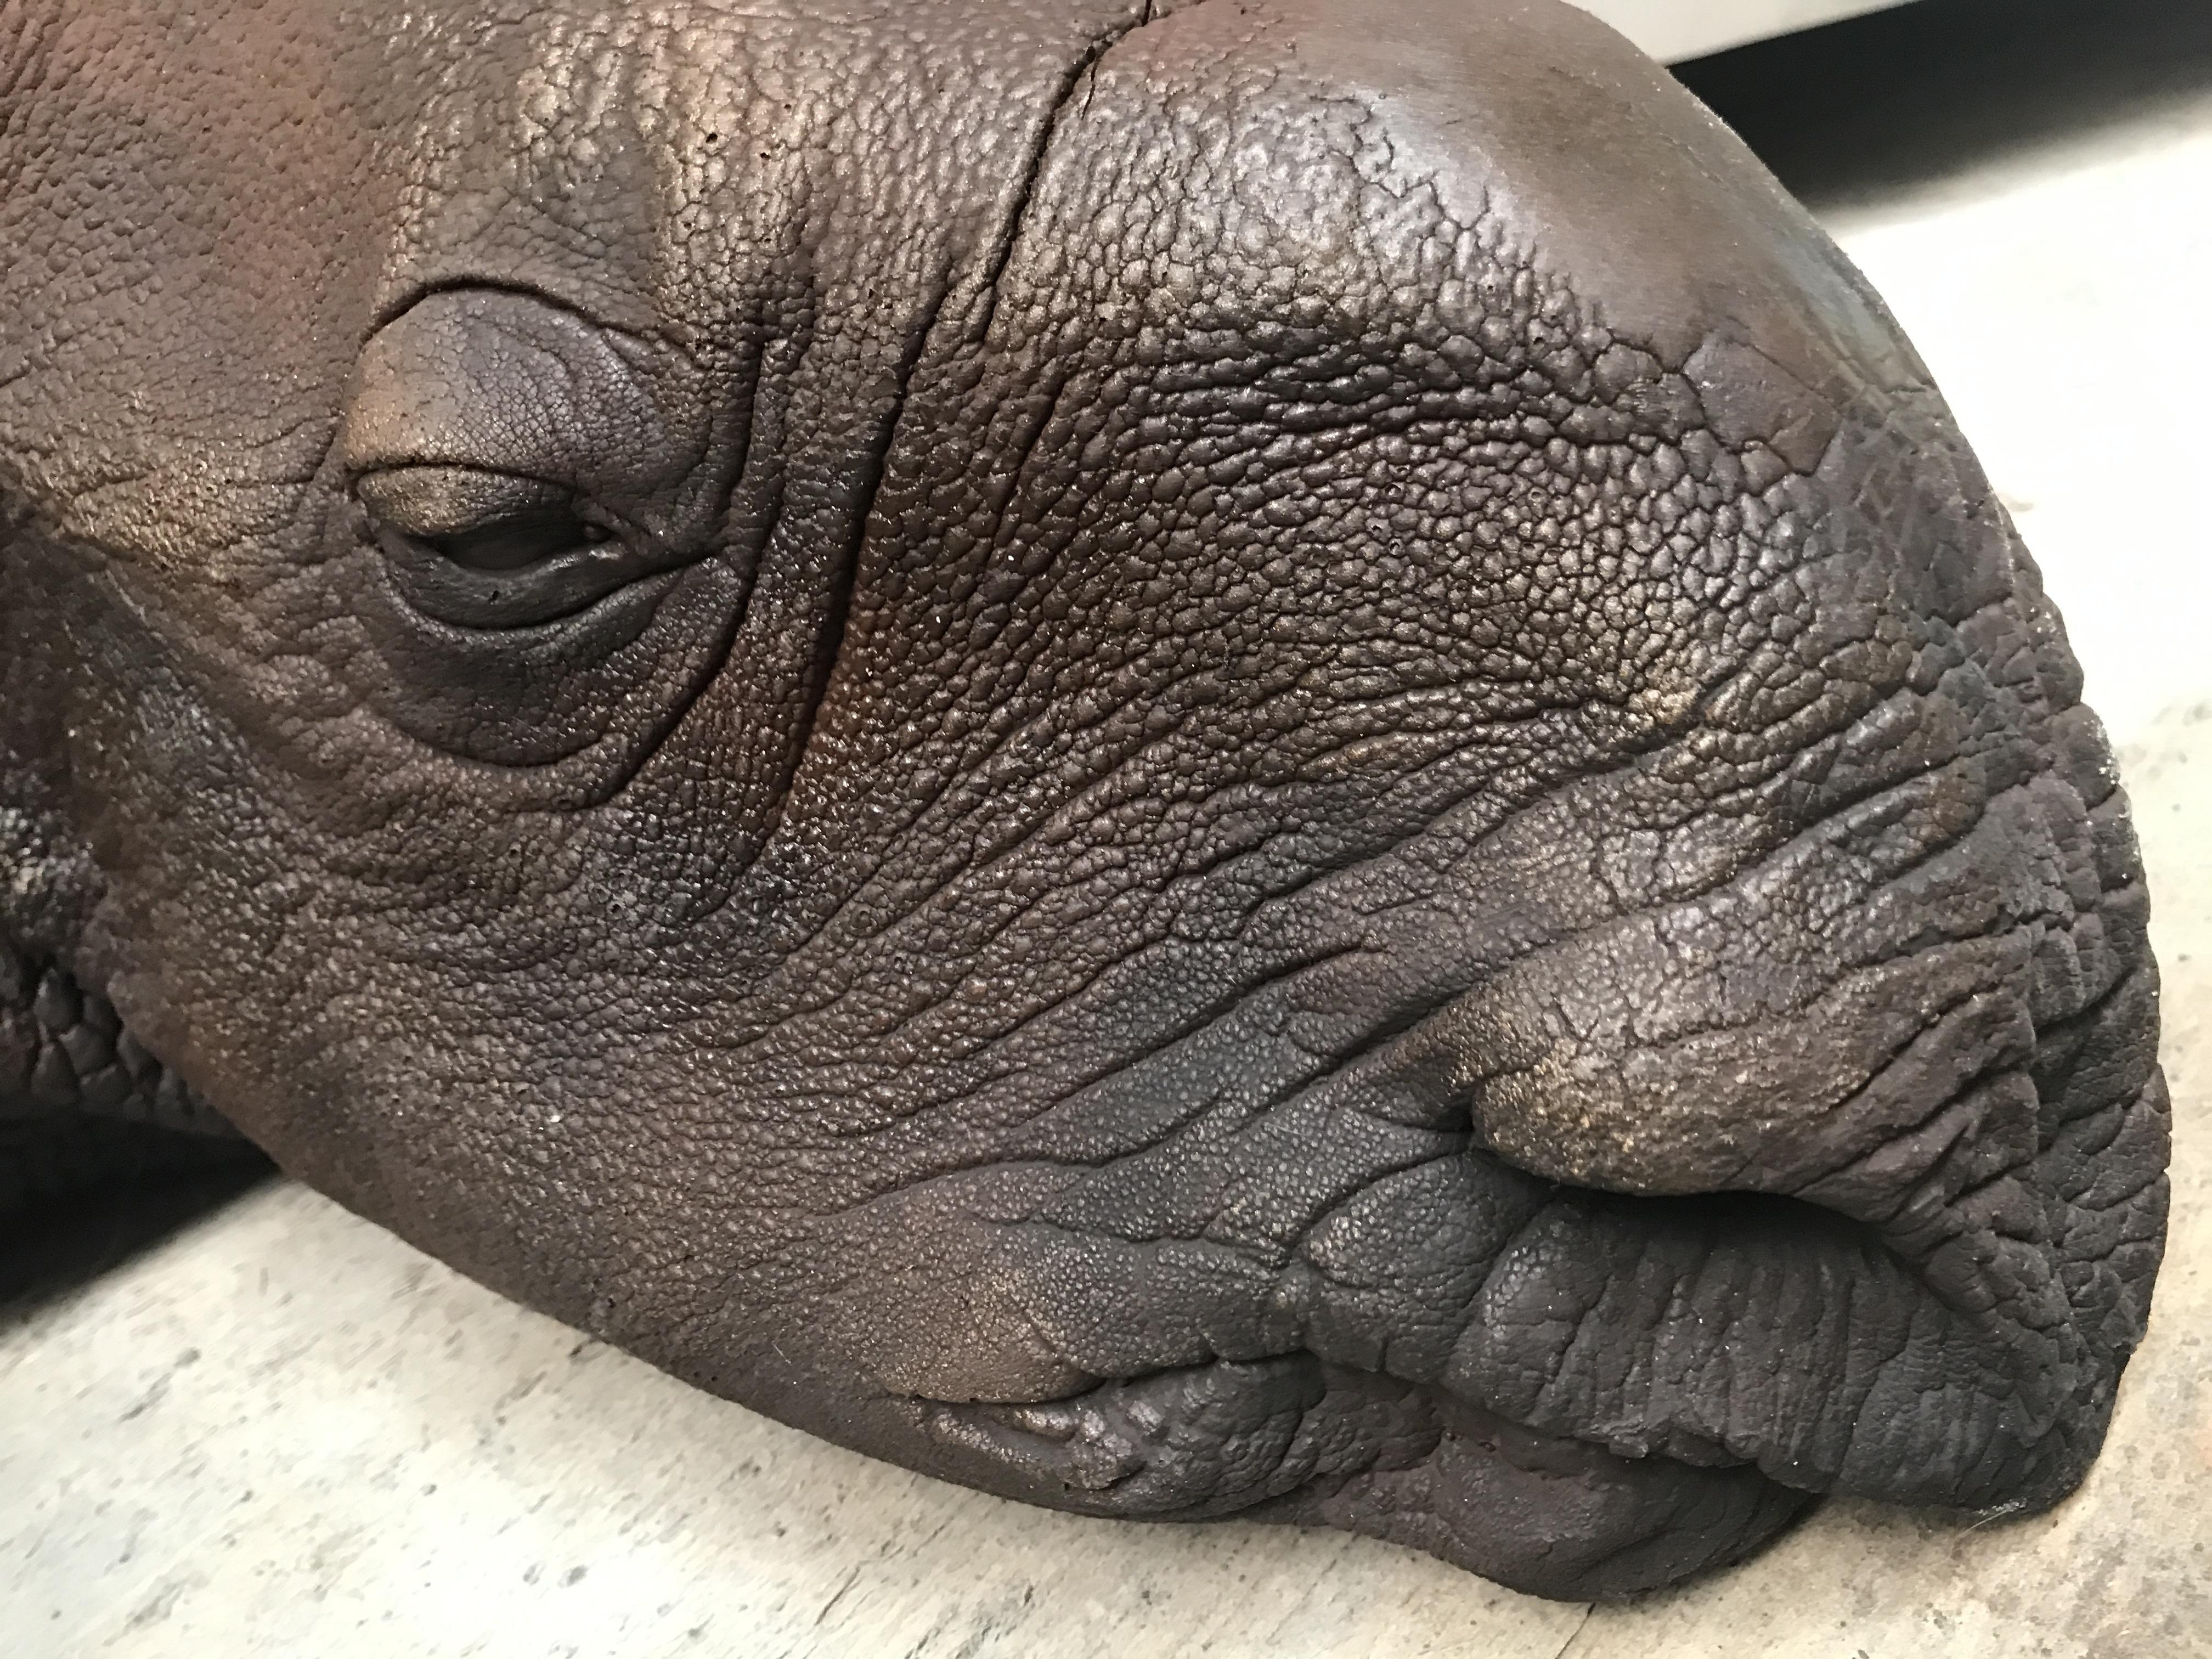 Contemporary Lifelike Replica of a Rhino Calf For Sale